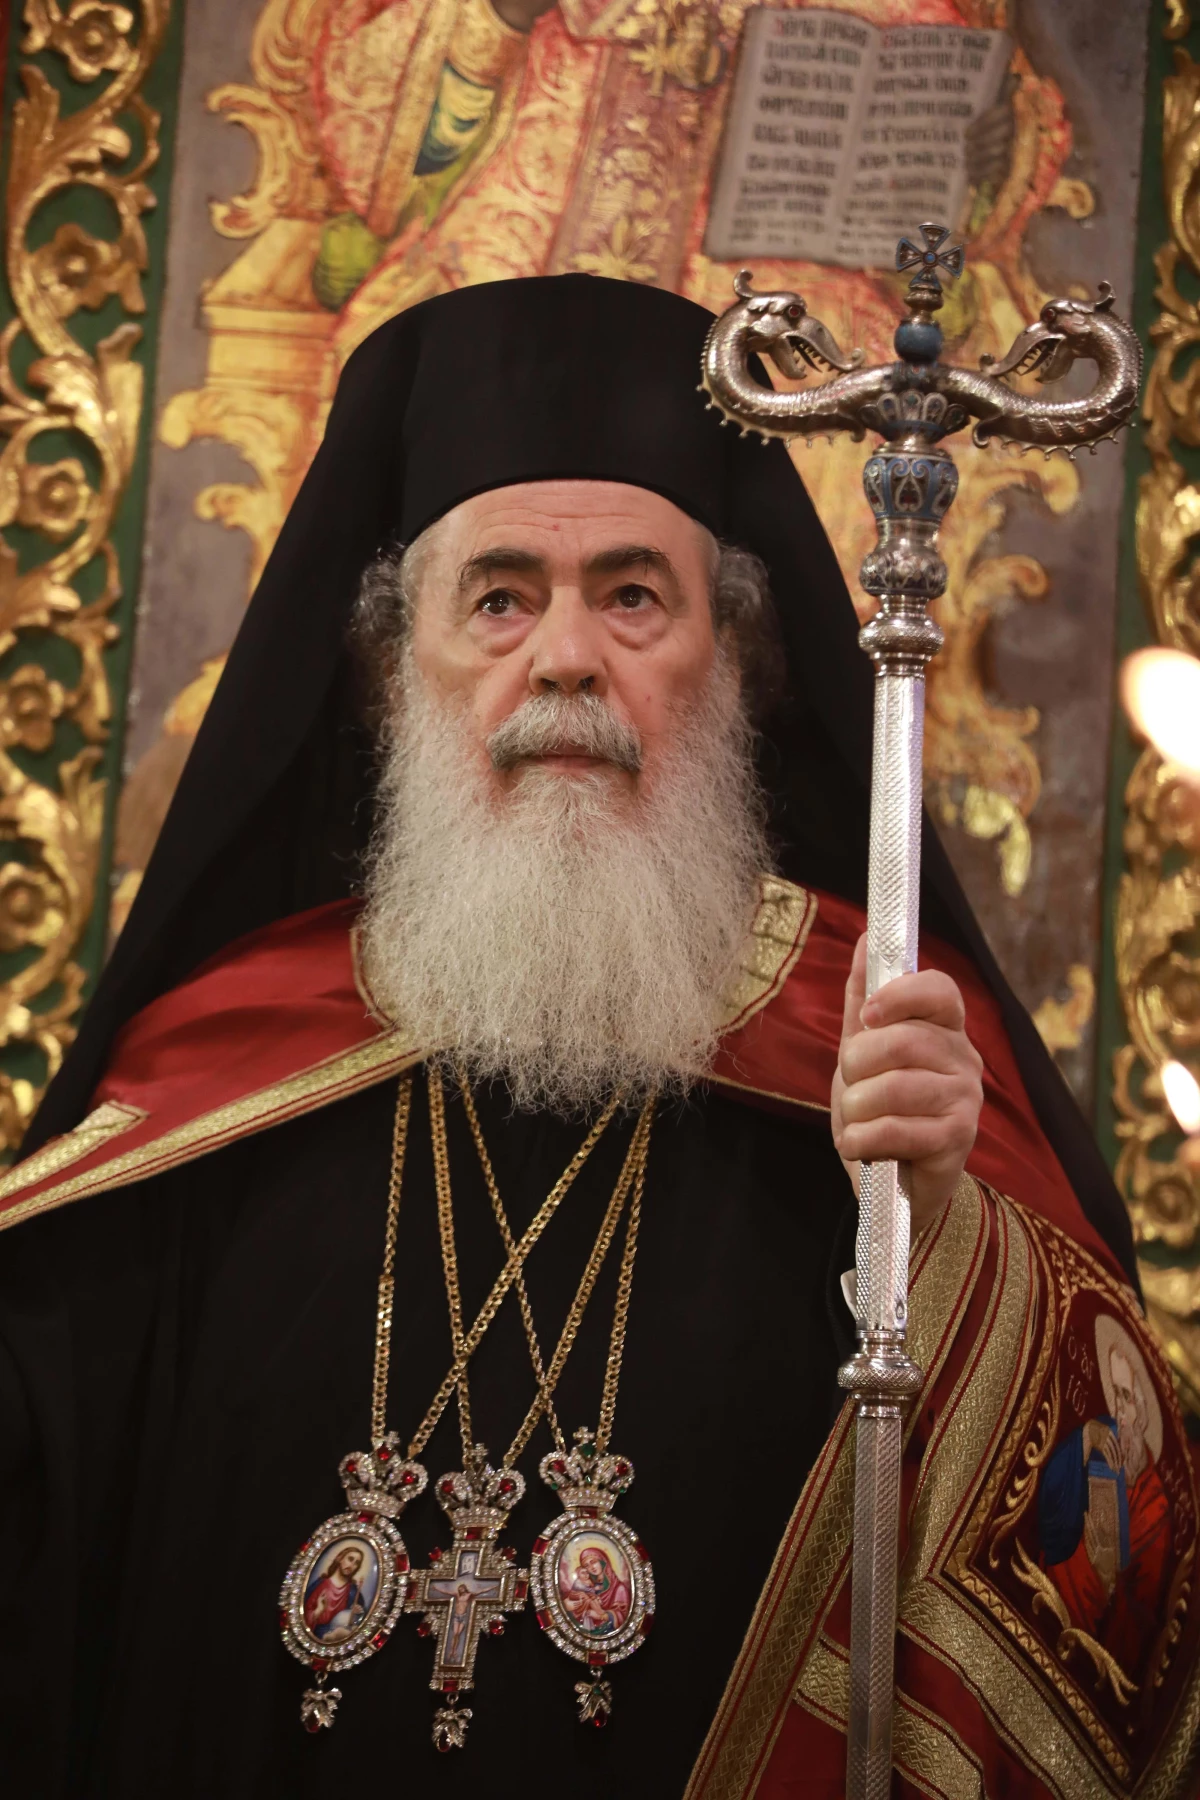 BEYTÜLLAHİM - Ortodoks Hristiyanların Noel kutlamaları başladı